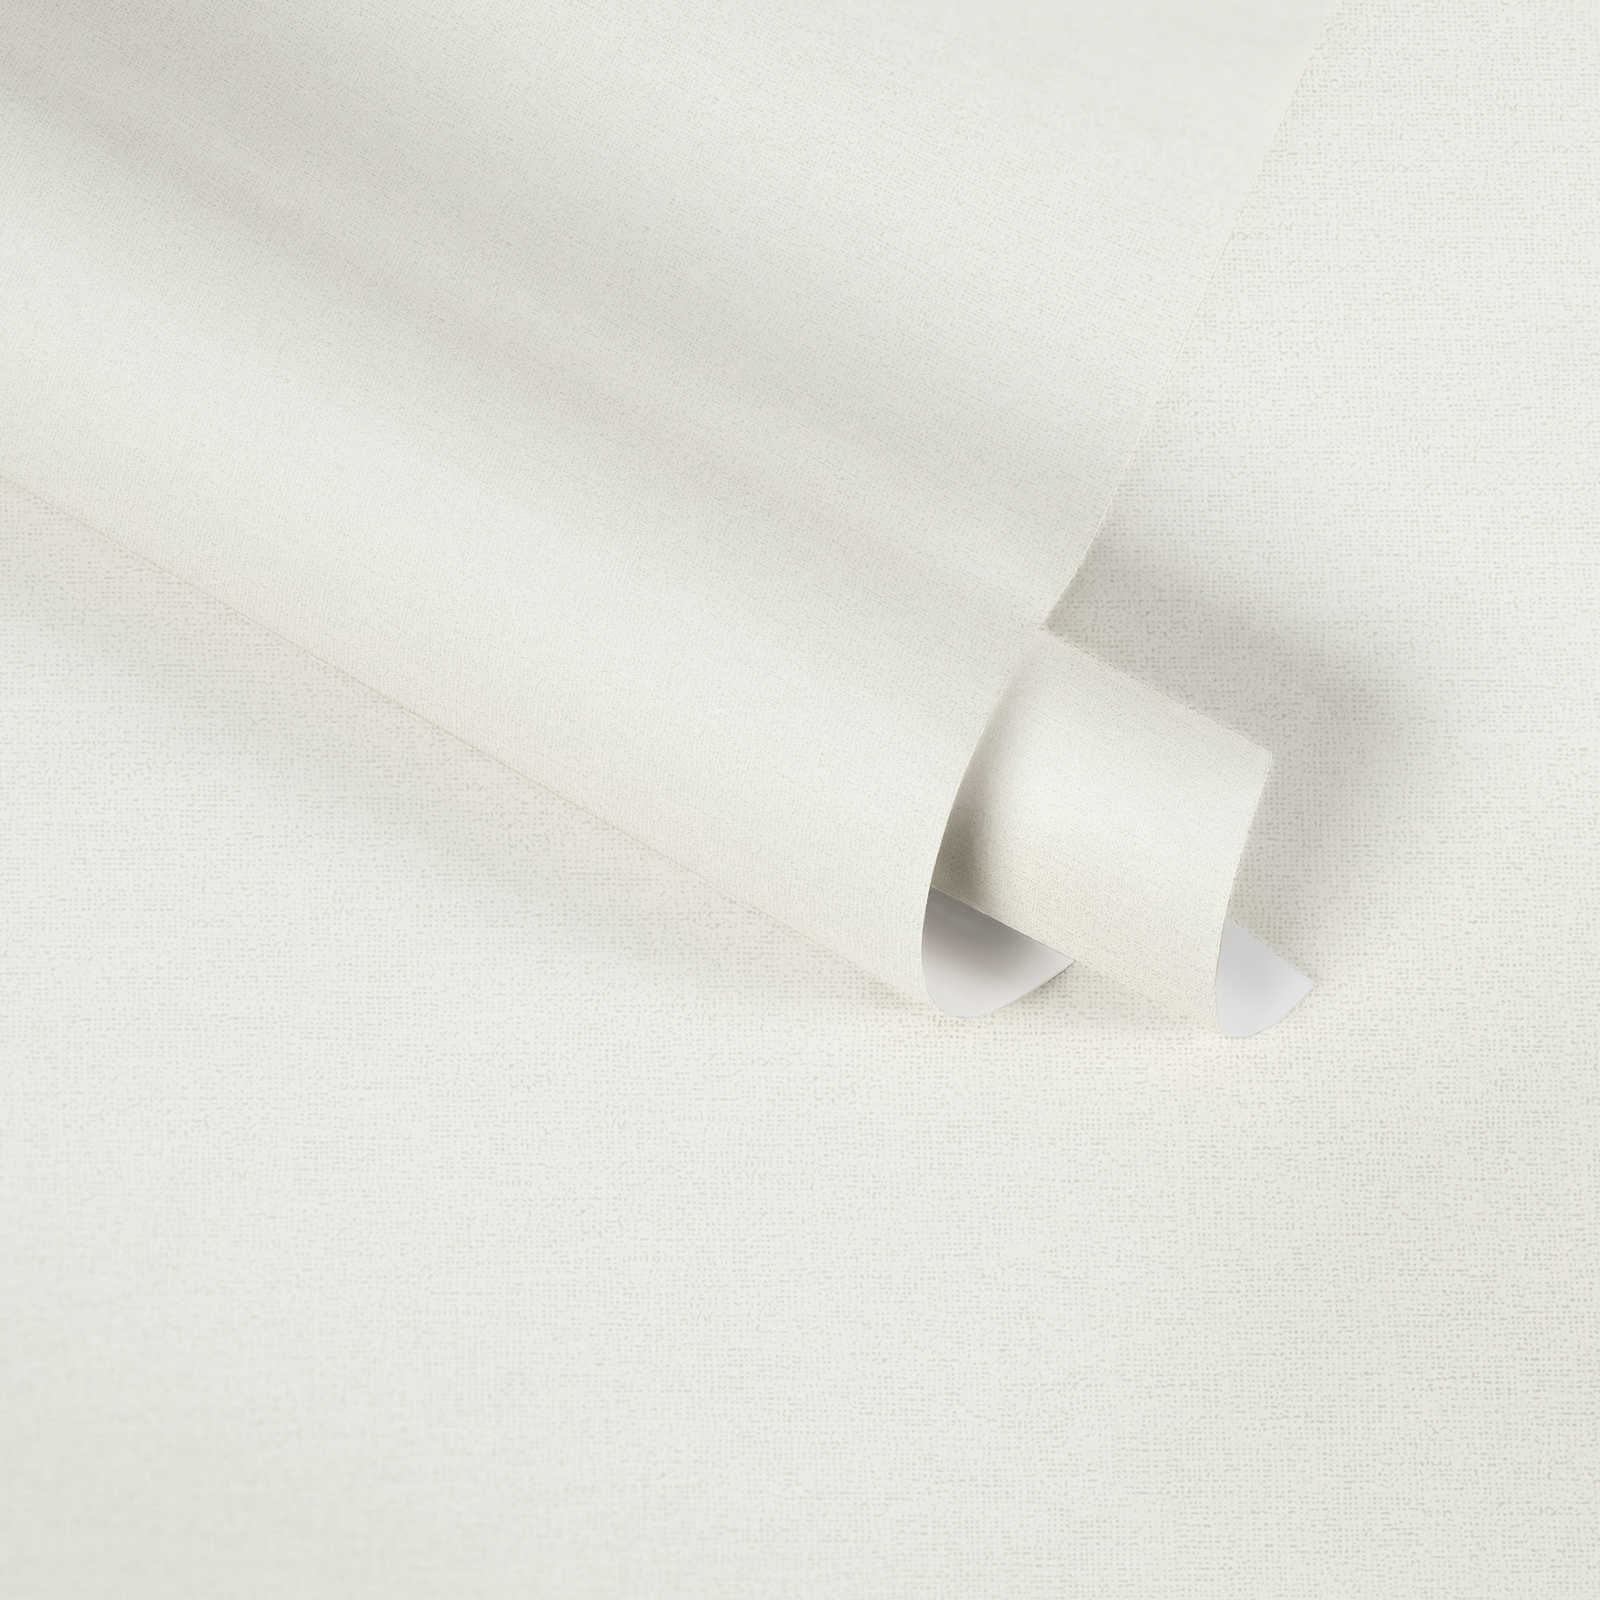             Eenheidsbehang crème-wit van MICHASLKY met textielstructuur
        